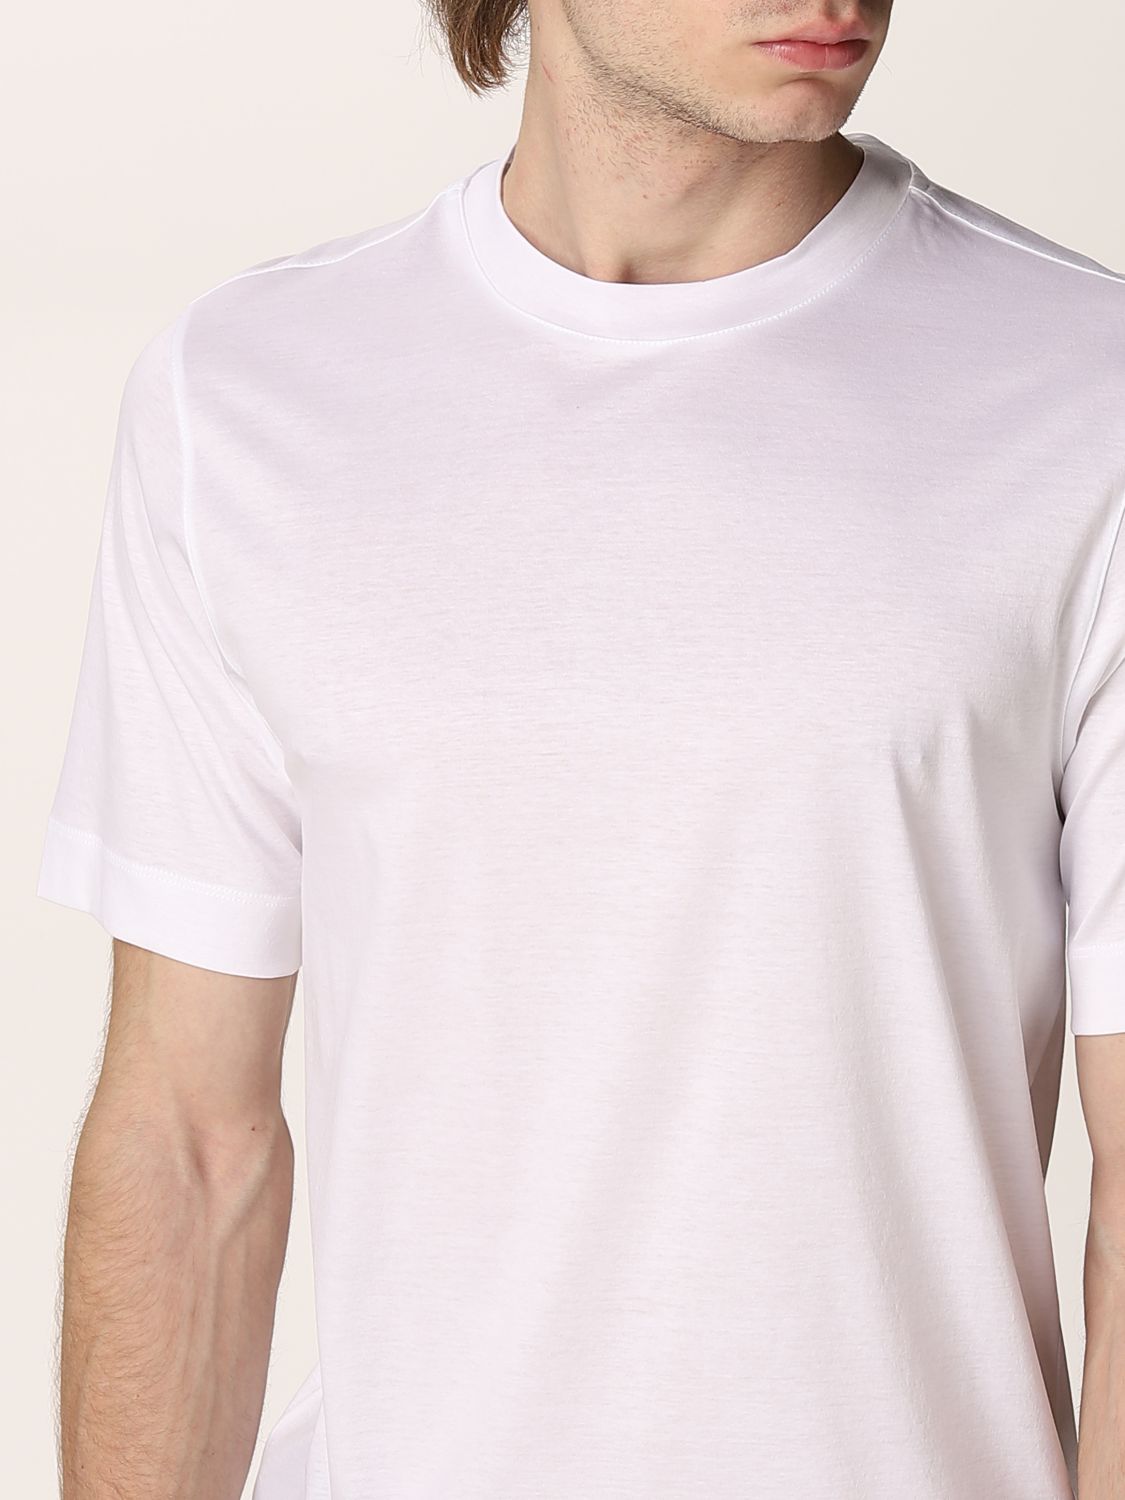 Z ZEGNA: T-shirt men | T-Shirt Z Zegna Men White | T-Shirt Z Zegna 